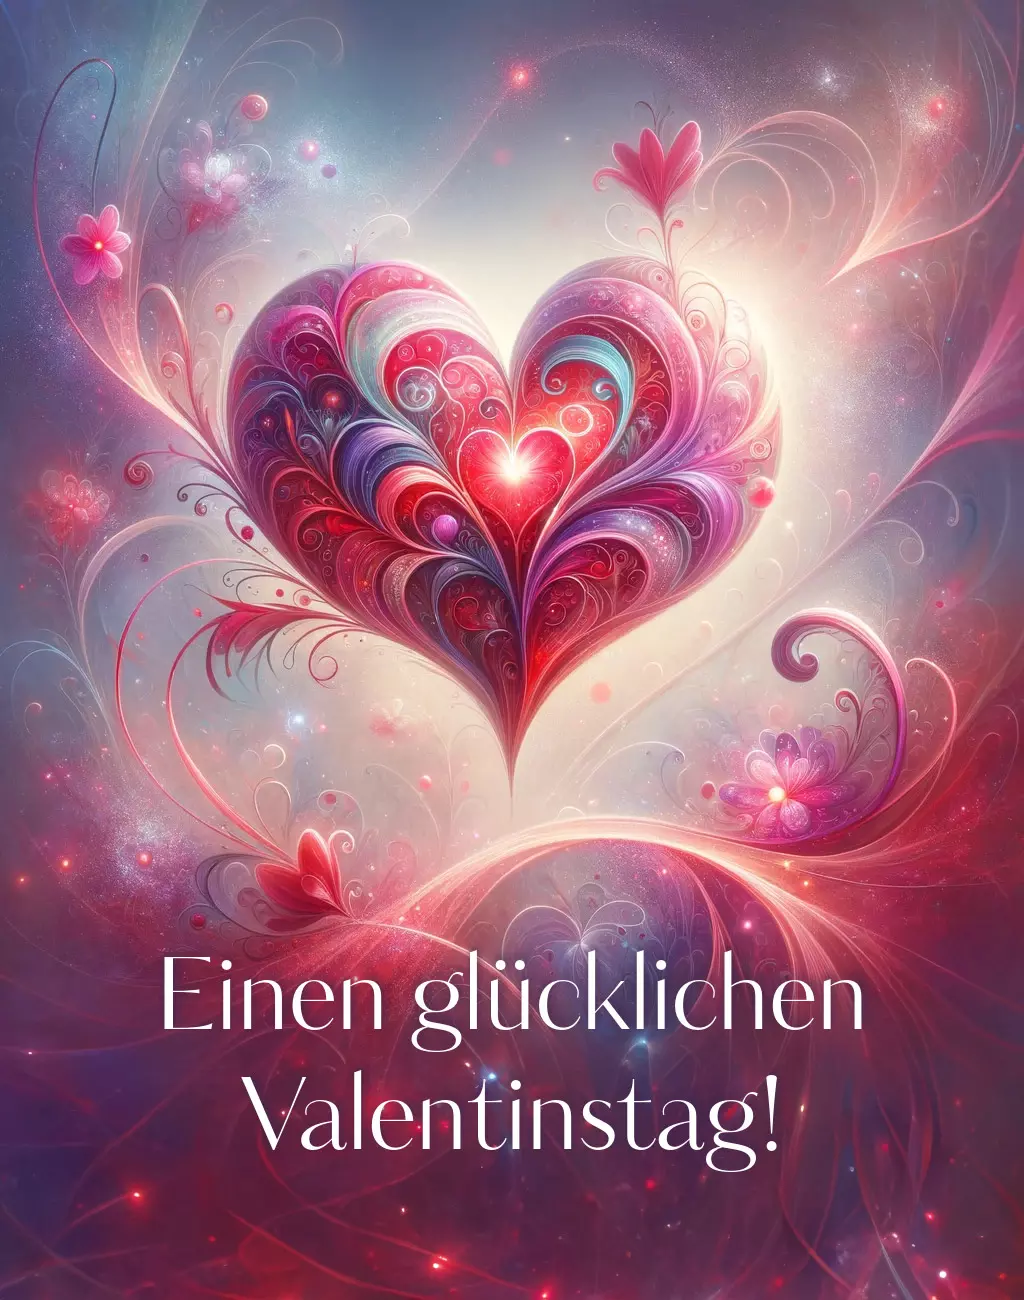 #valentinstag #kunst 20 - Einen glücklichen Valentinstag!